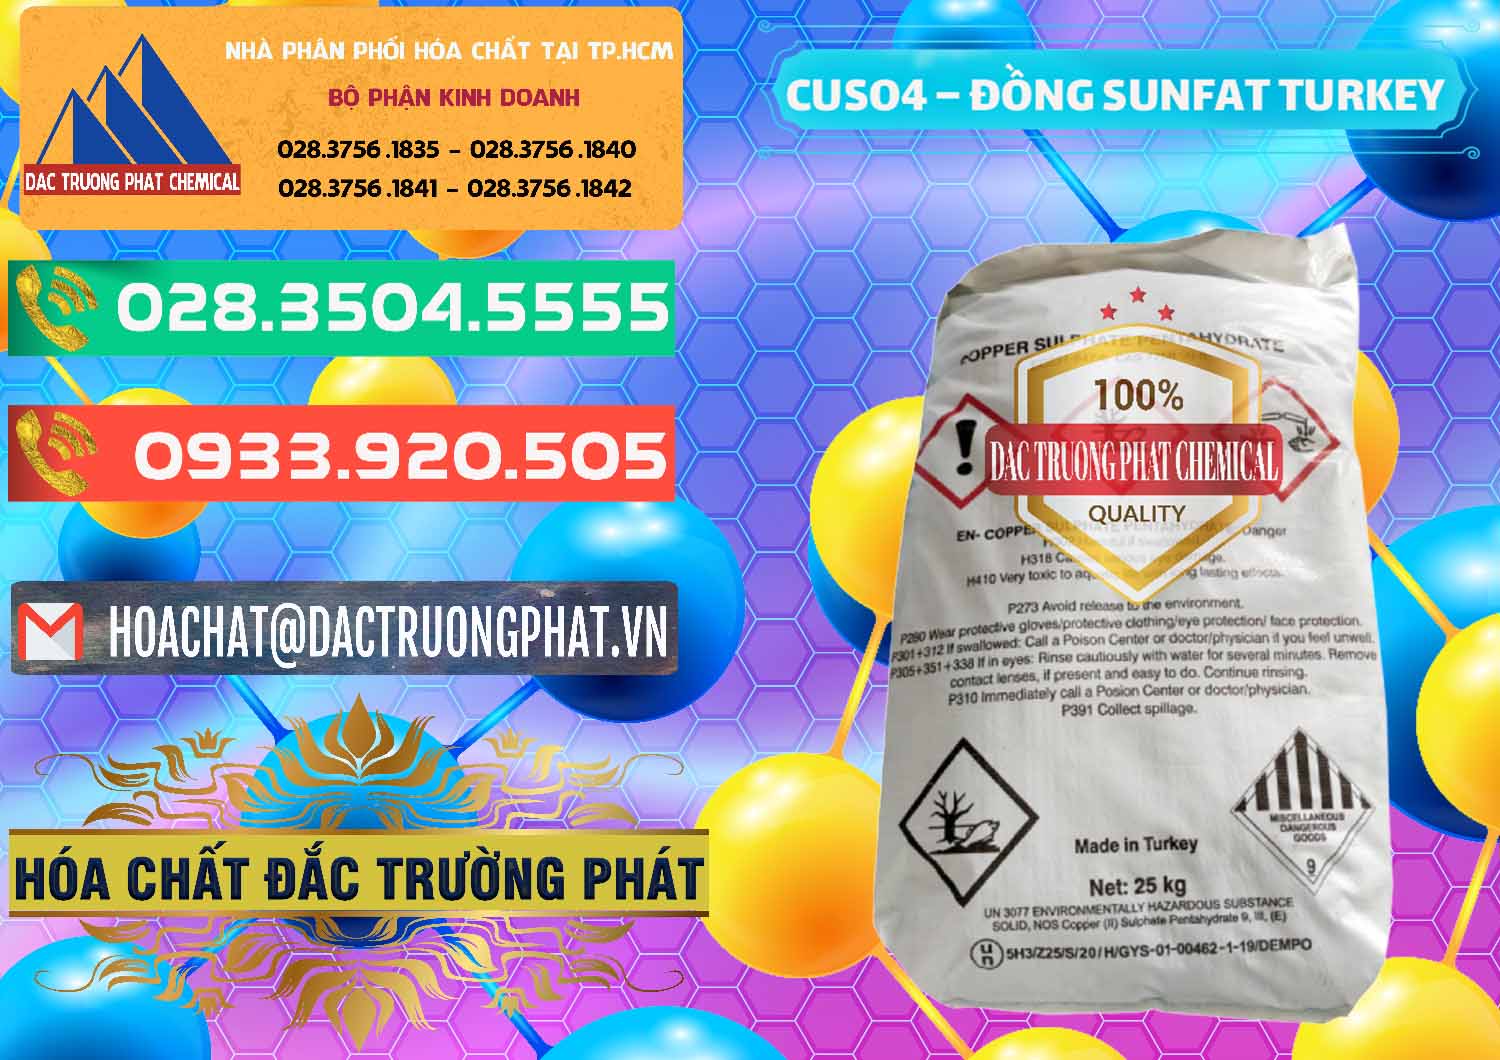 Chuyên phân phối & bán CuSO4 – Đồng Sunfat Thổ Nhĩ Kỳ Turkey - 0481 - Công ty cung cấp và phân phối hóa chất tại TP.HCM - congtyhoachat.com.vn